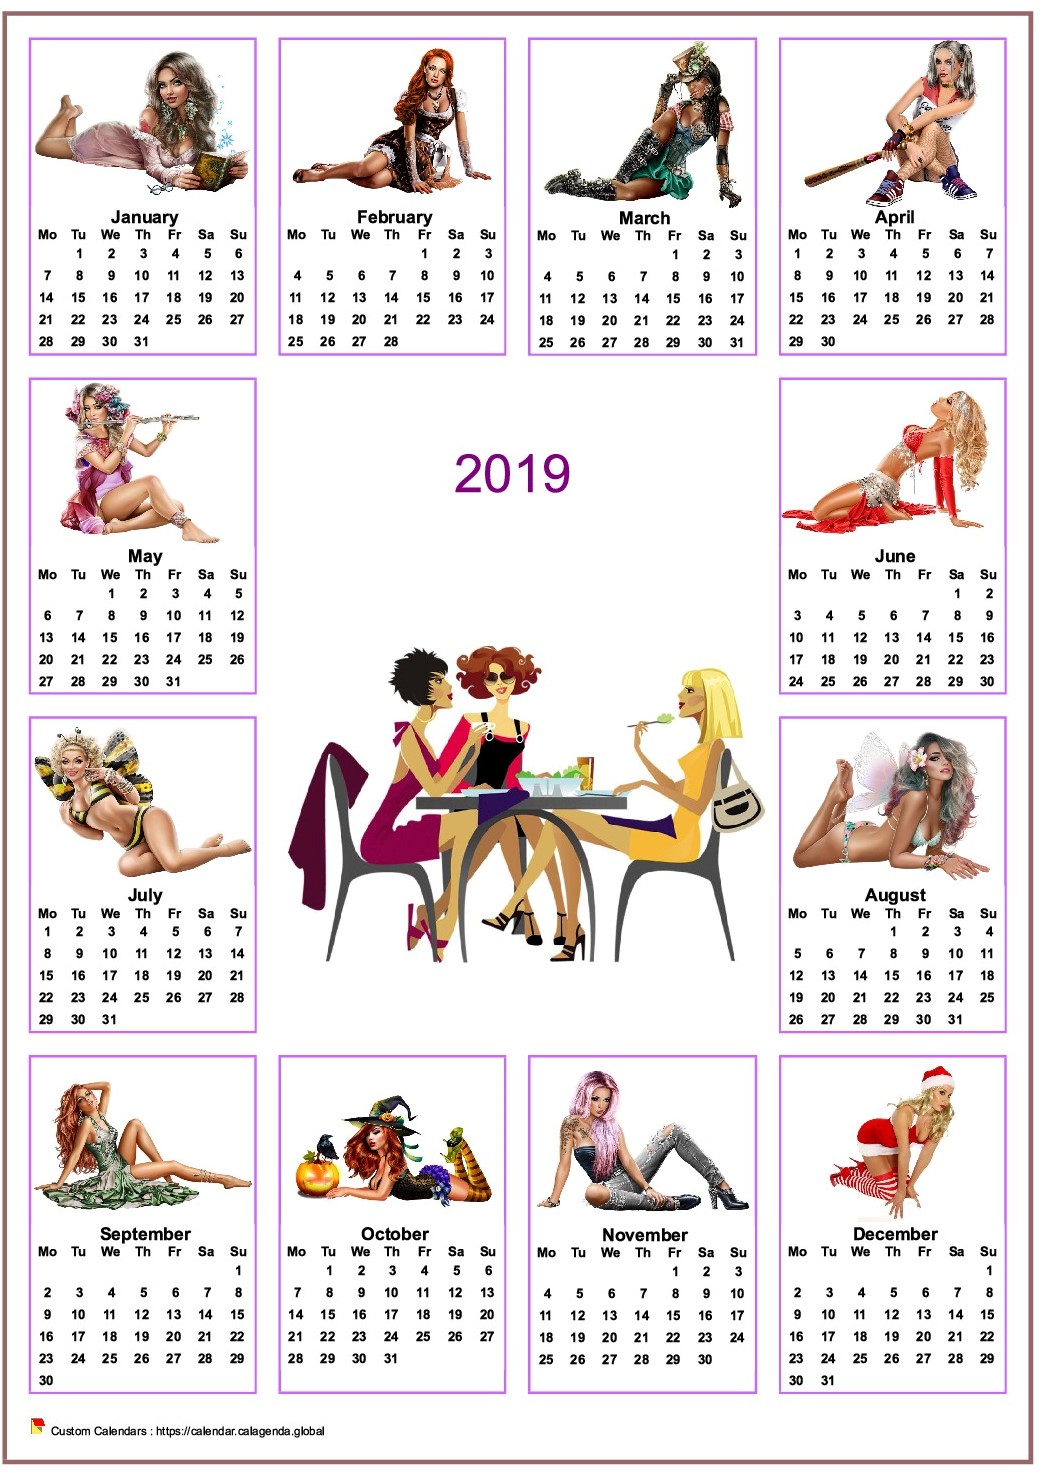  2019 annual calendar tubes women